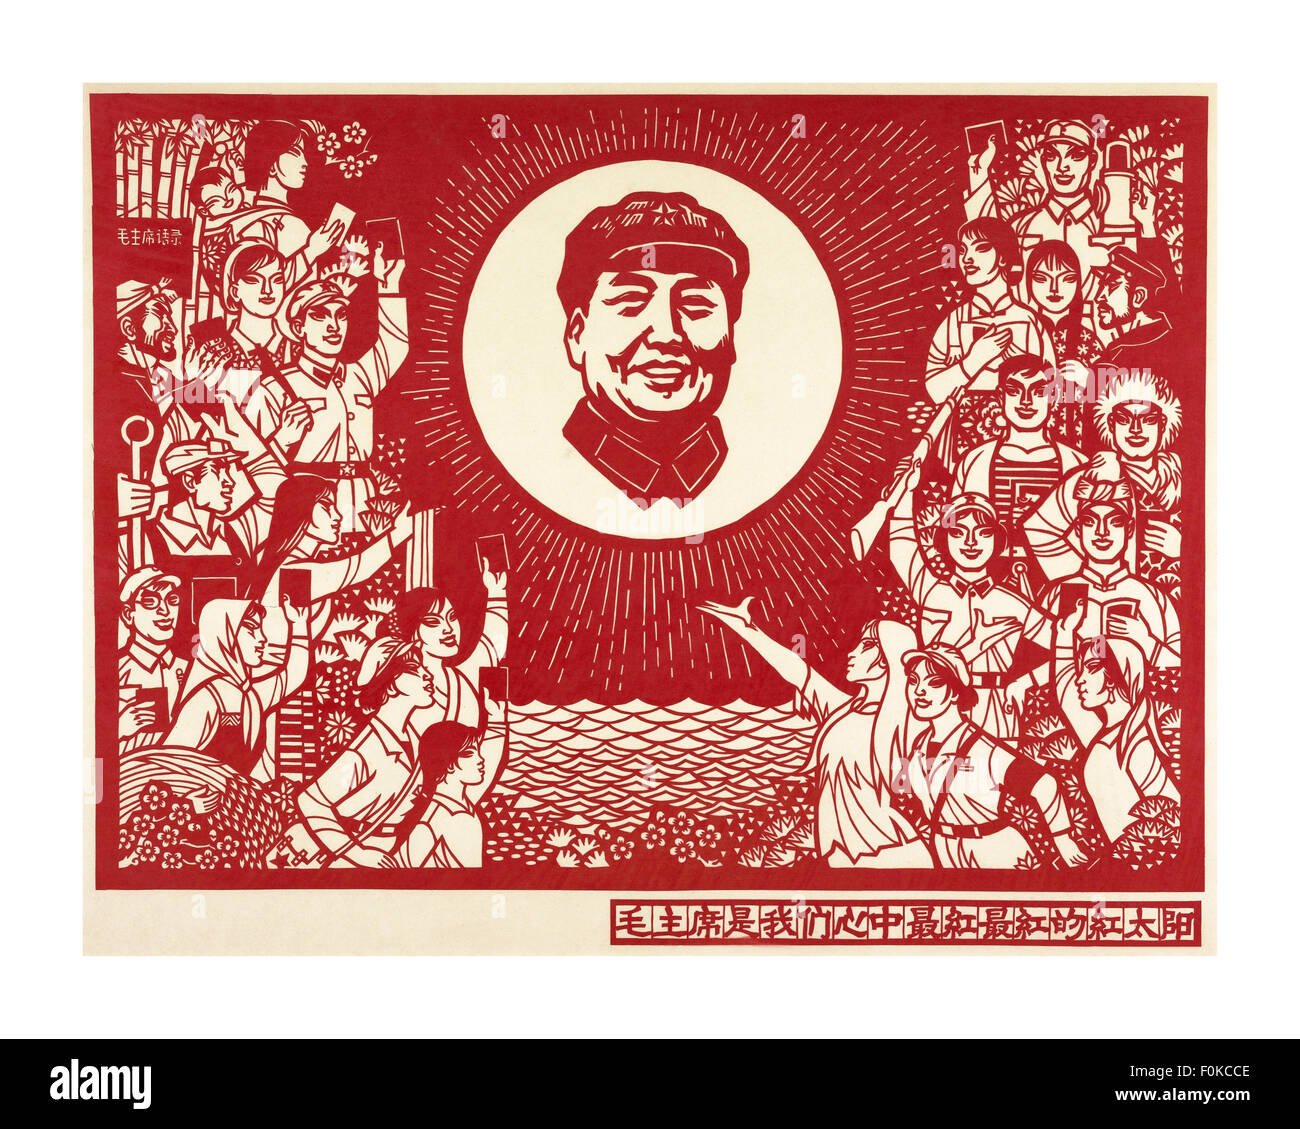 1960 affiche de propagande de la République populaire de Chine de Mao avec les travailleurs holding livre rouge, à l'aide de la Chine ancienne, l'artisanat de papier Banque D'Images